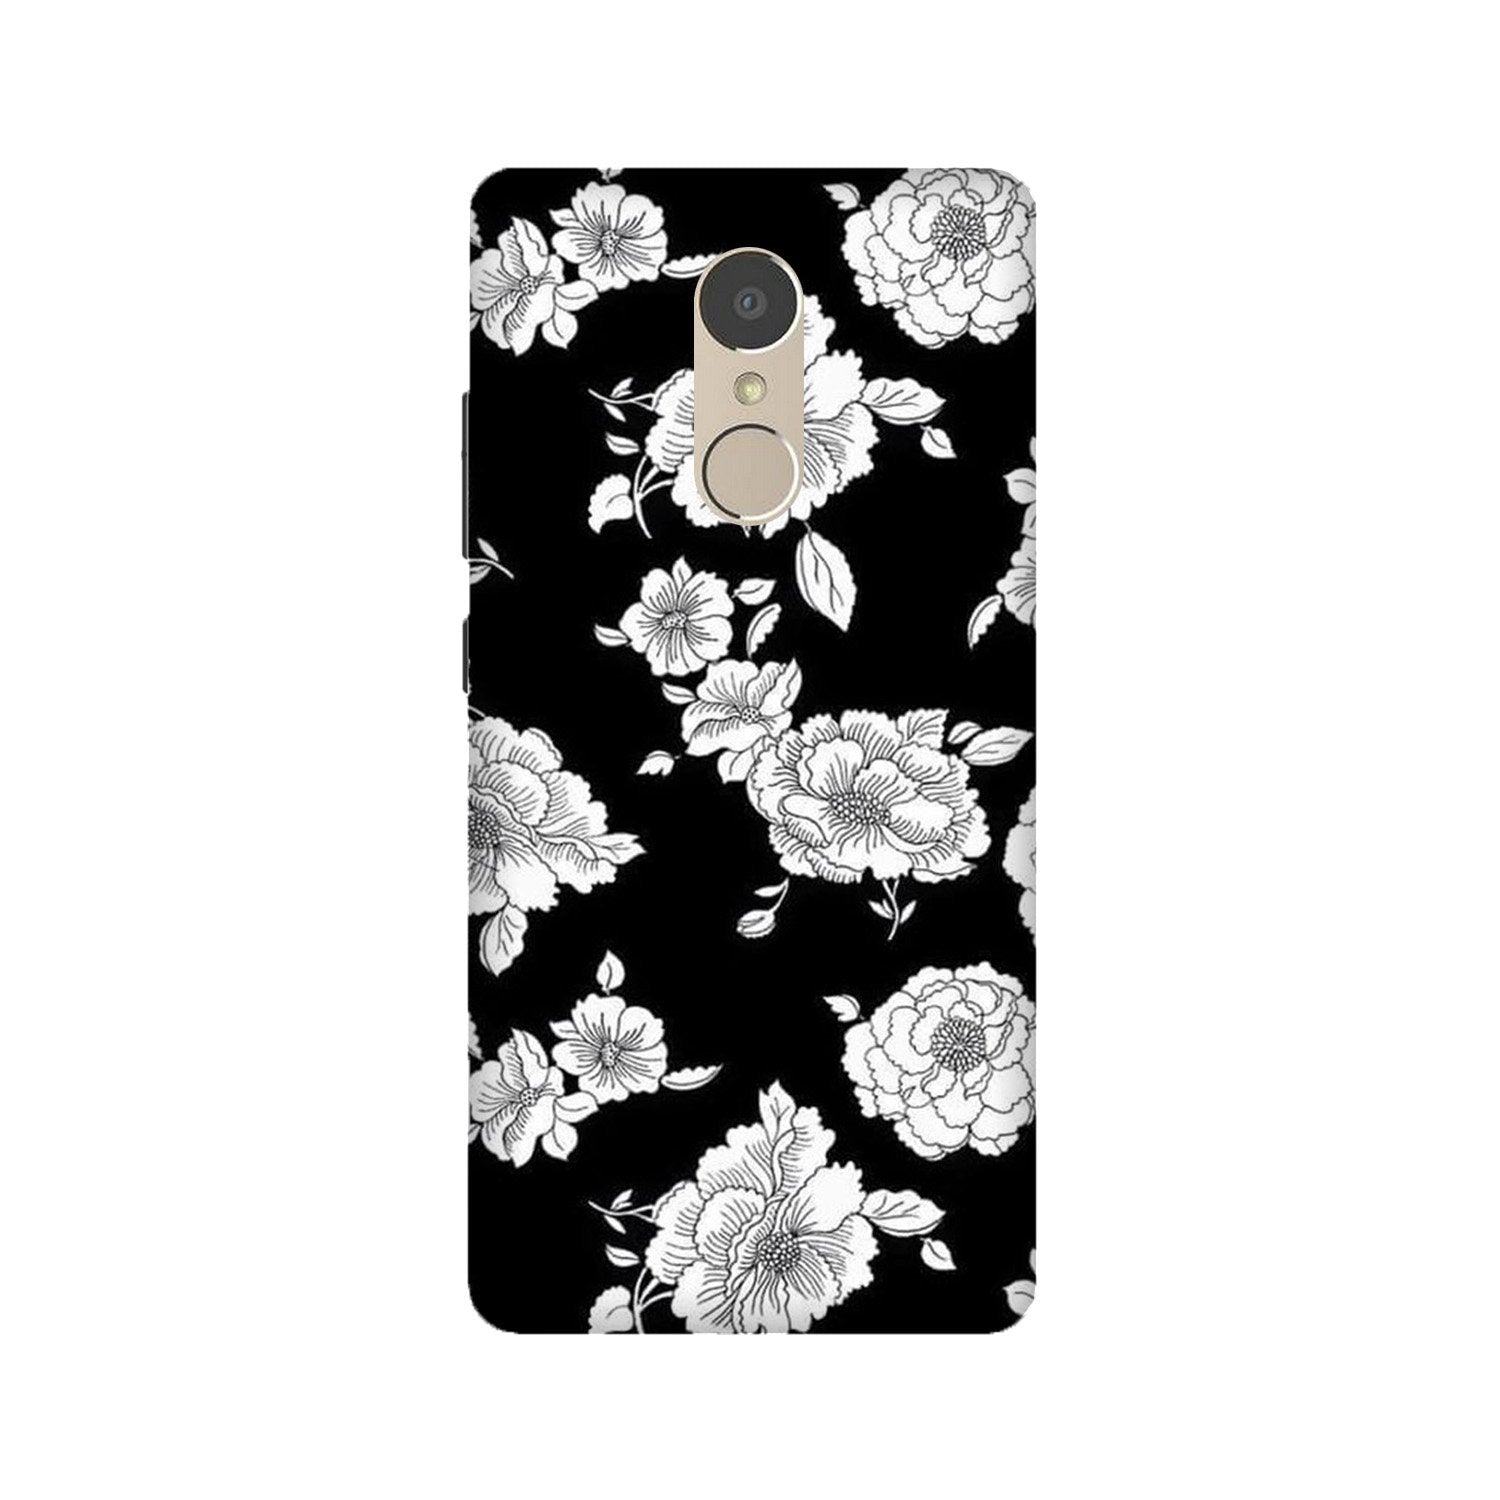 White flowers Black Background Case for Lenovo K6 Note